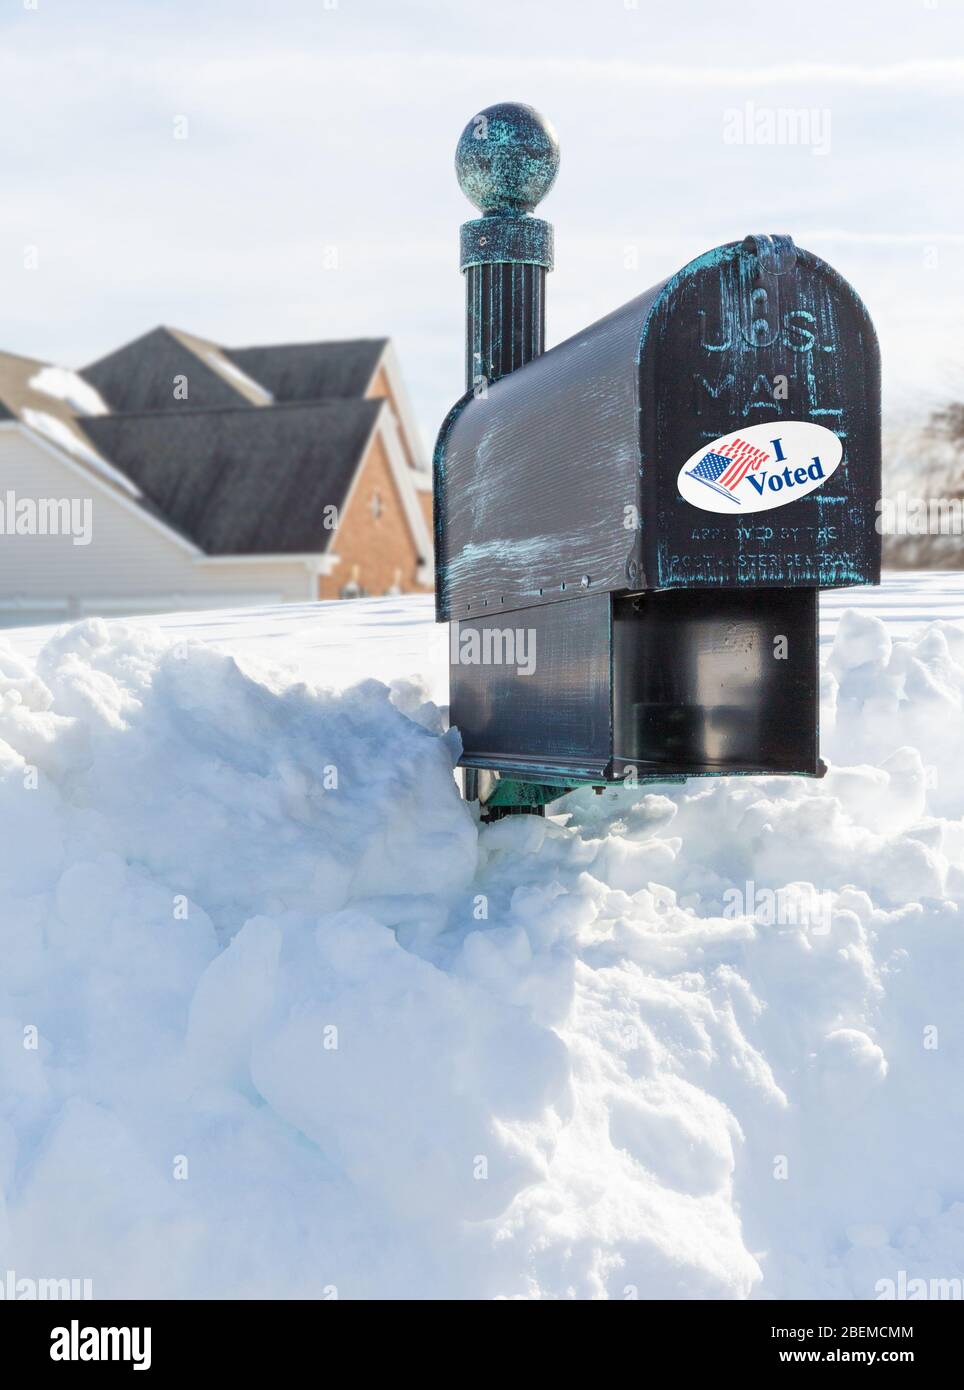 Metall-Briefkasten für ländliche Häuser in tiefem Schnee begraben mit ich habe Sticker als Konzept für die Abstimmung per Post oder Briefwahl Stimmzettel gestimmt Stockfoto